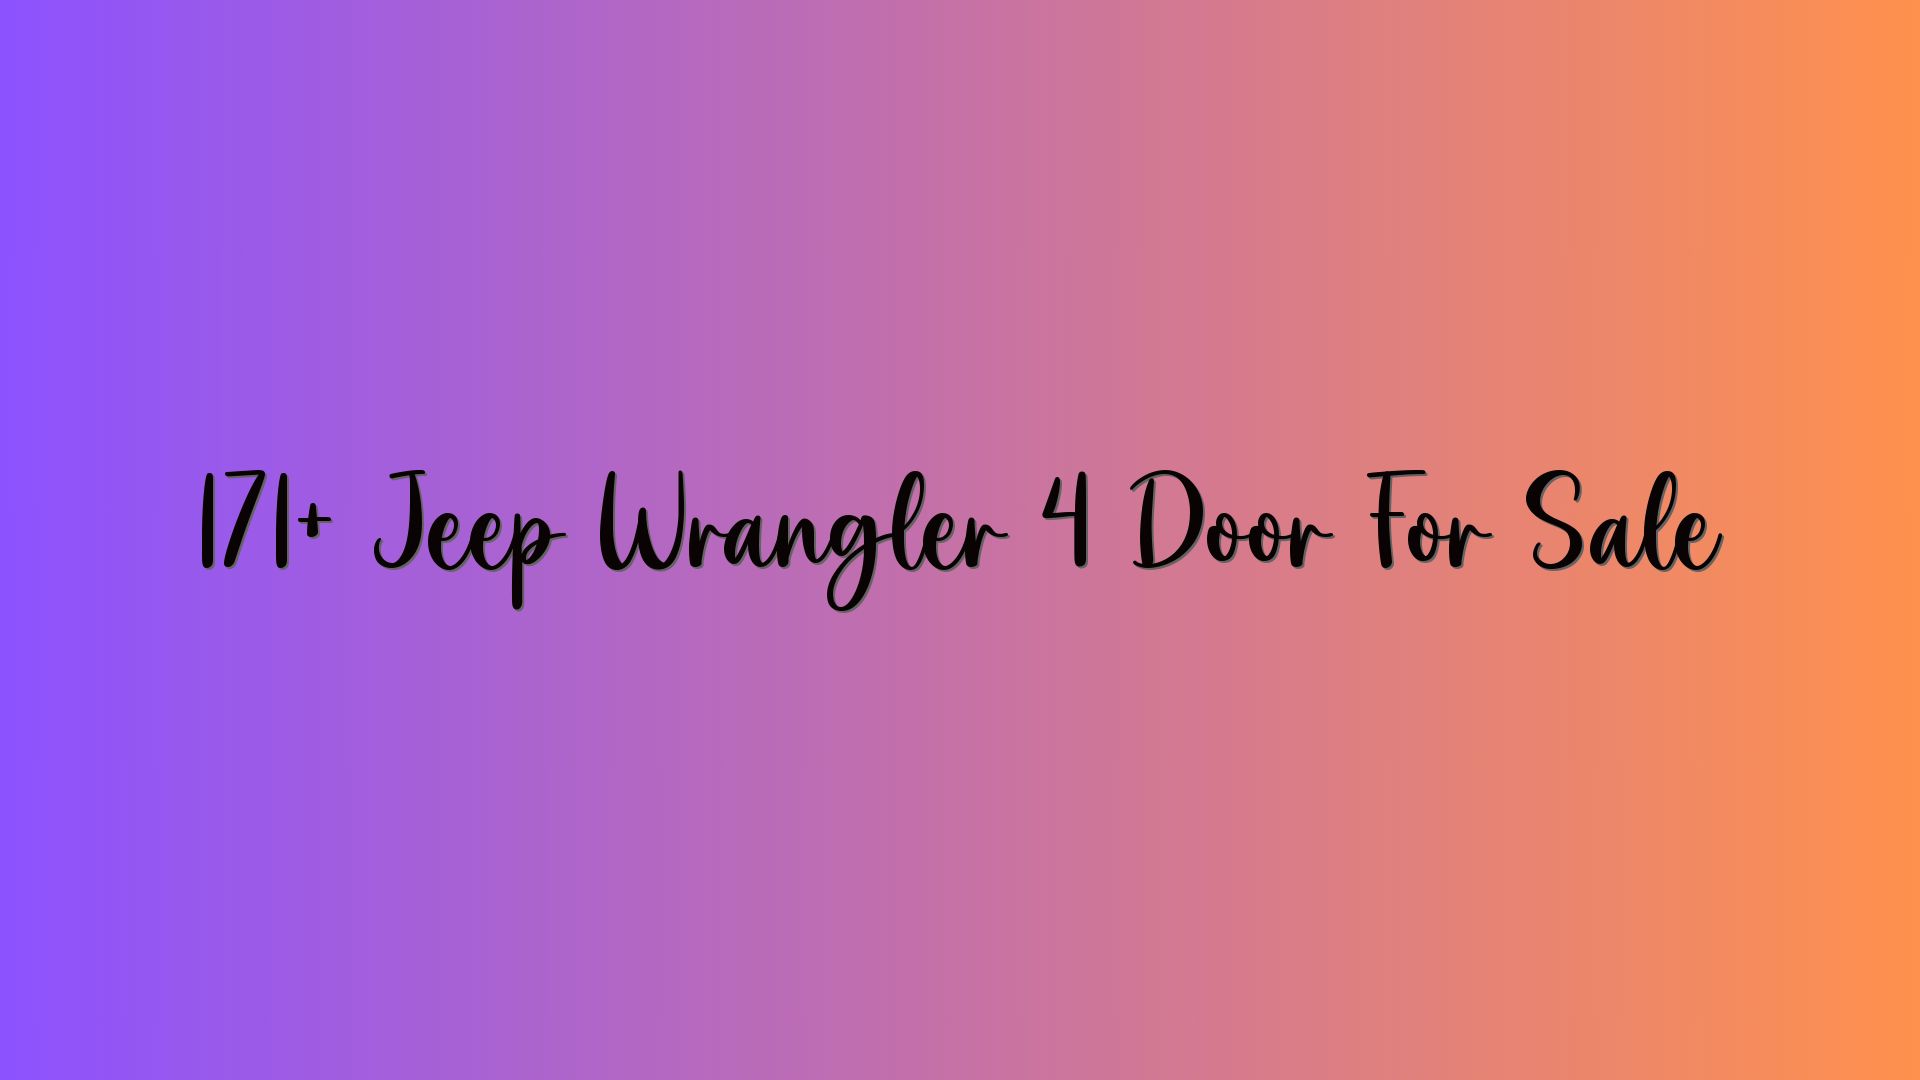 171+ Jeep Wrangler 4 Door For Sale